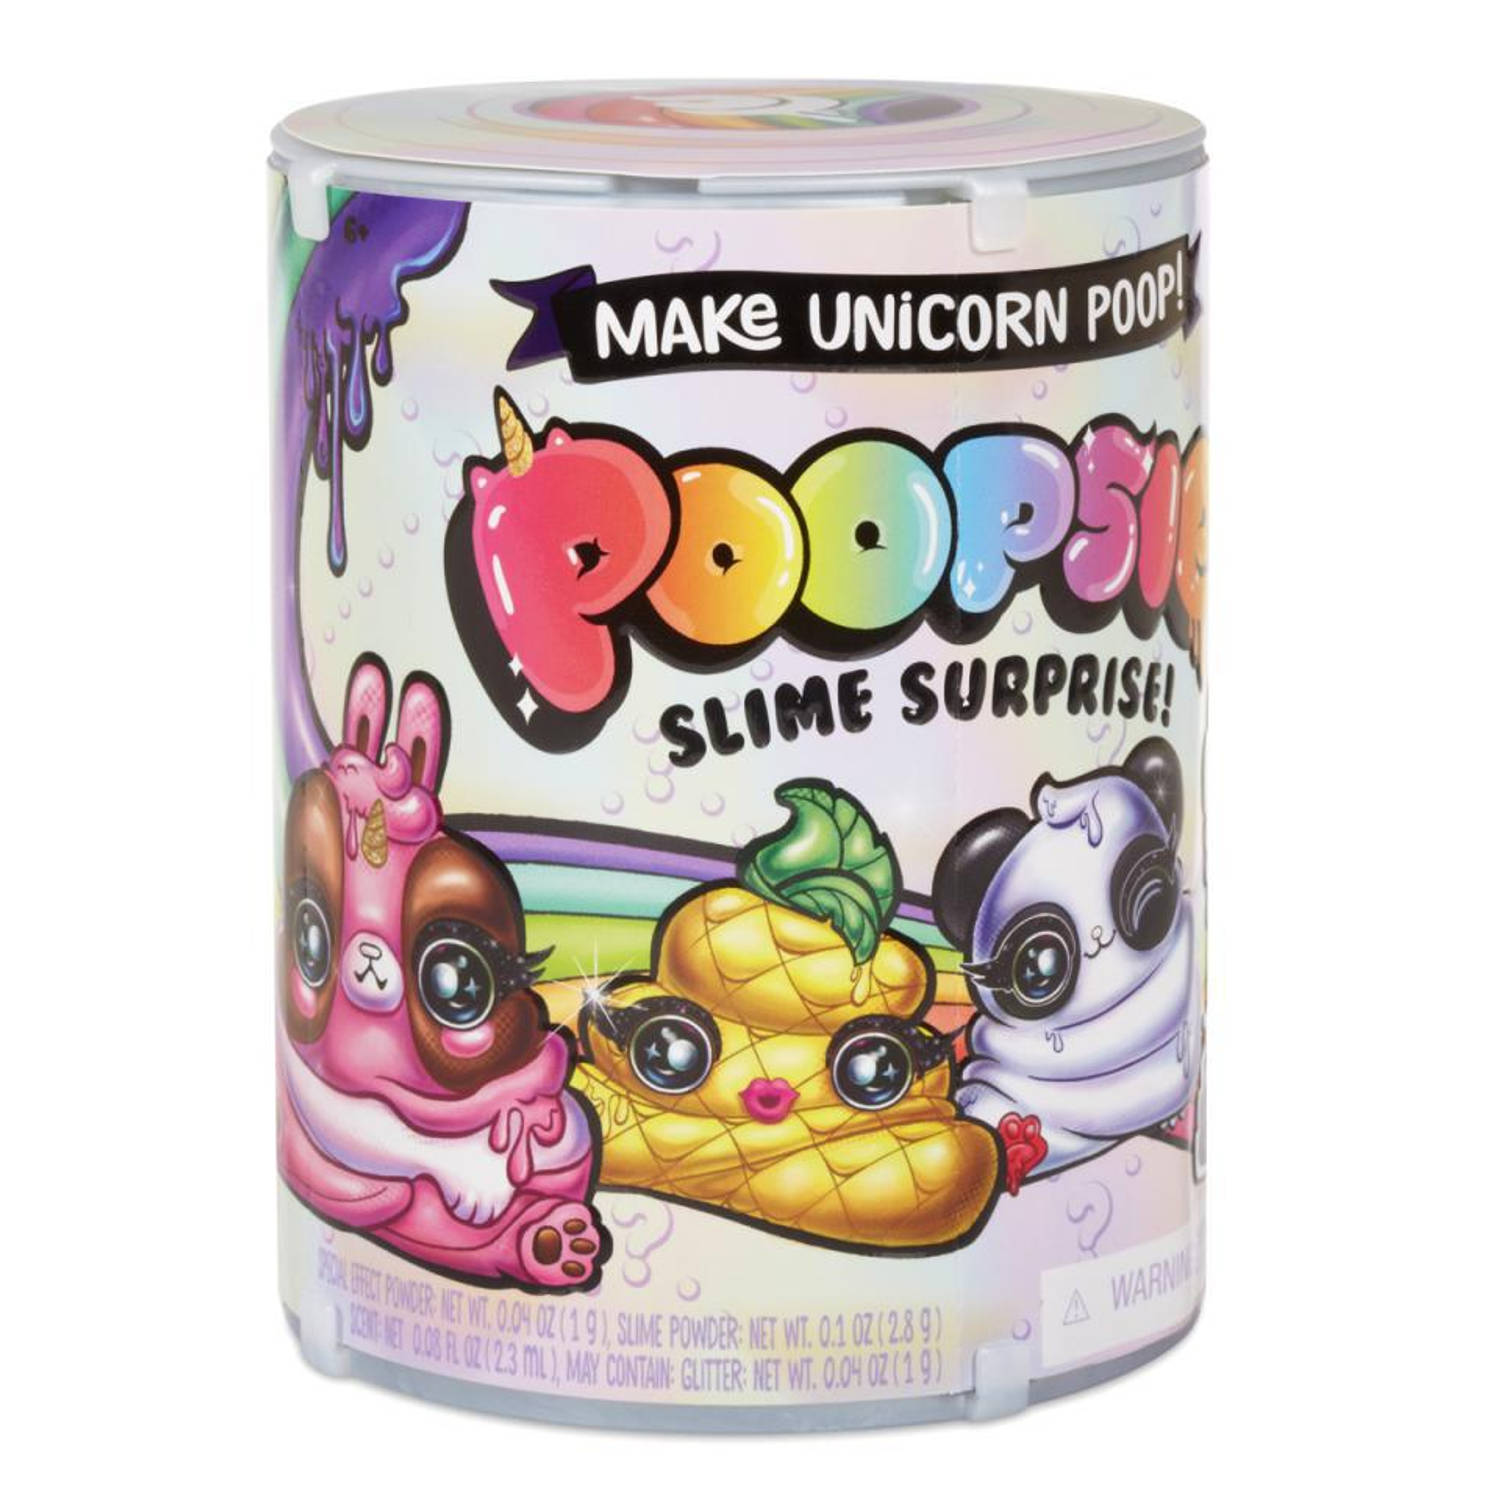 Poopsie - Poop Packs